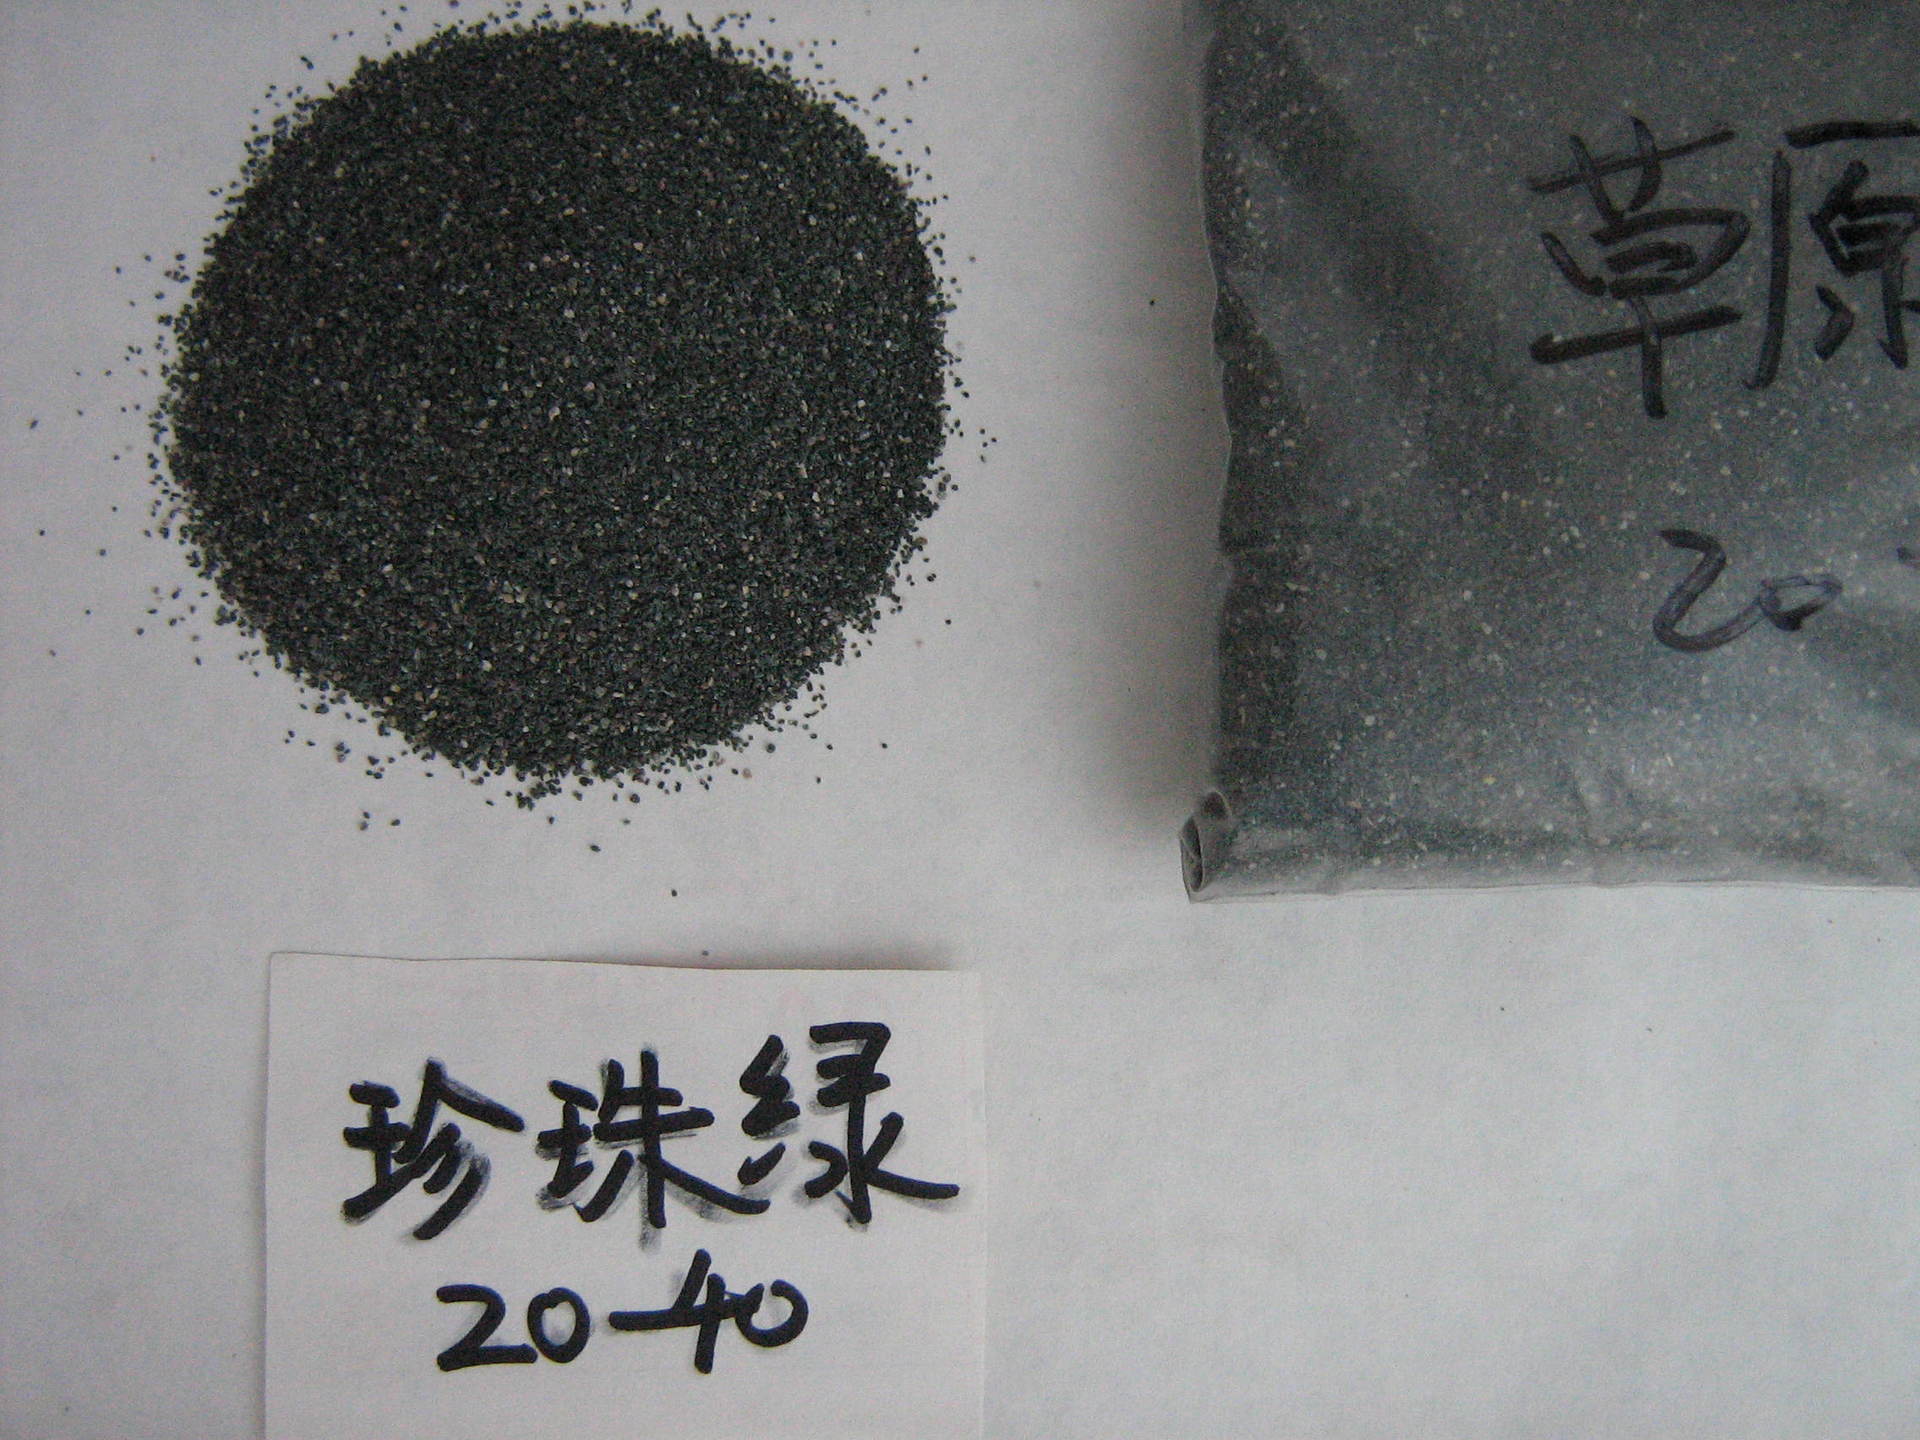 供应 优质天然青灰色彩砂 高品质彩砂 量大从优石子河沙石米示例图159